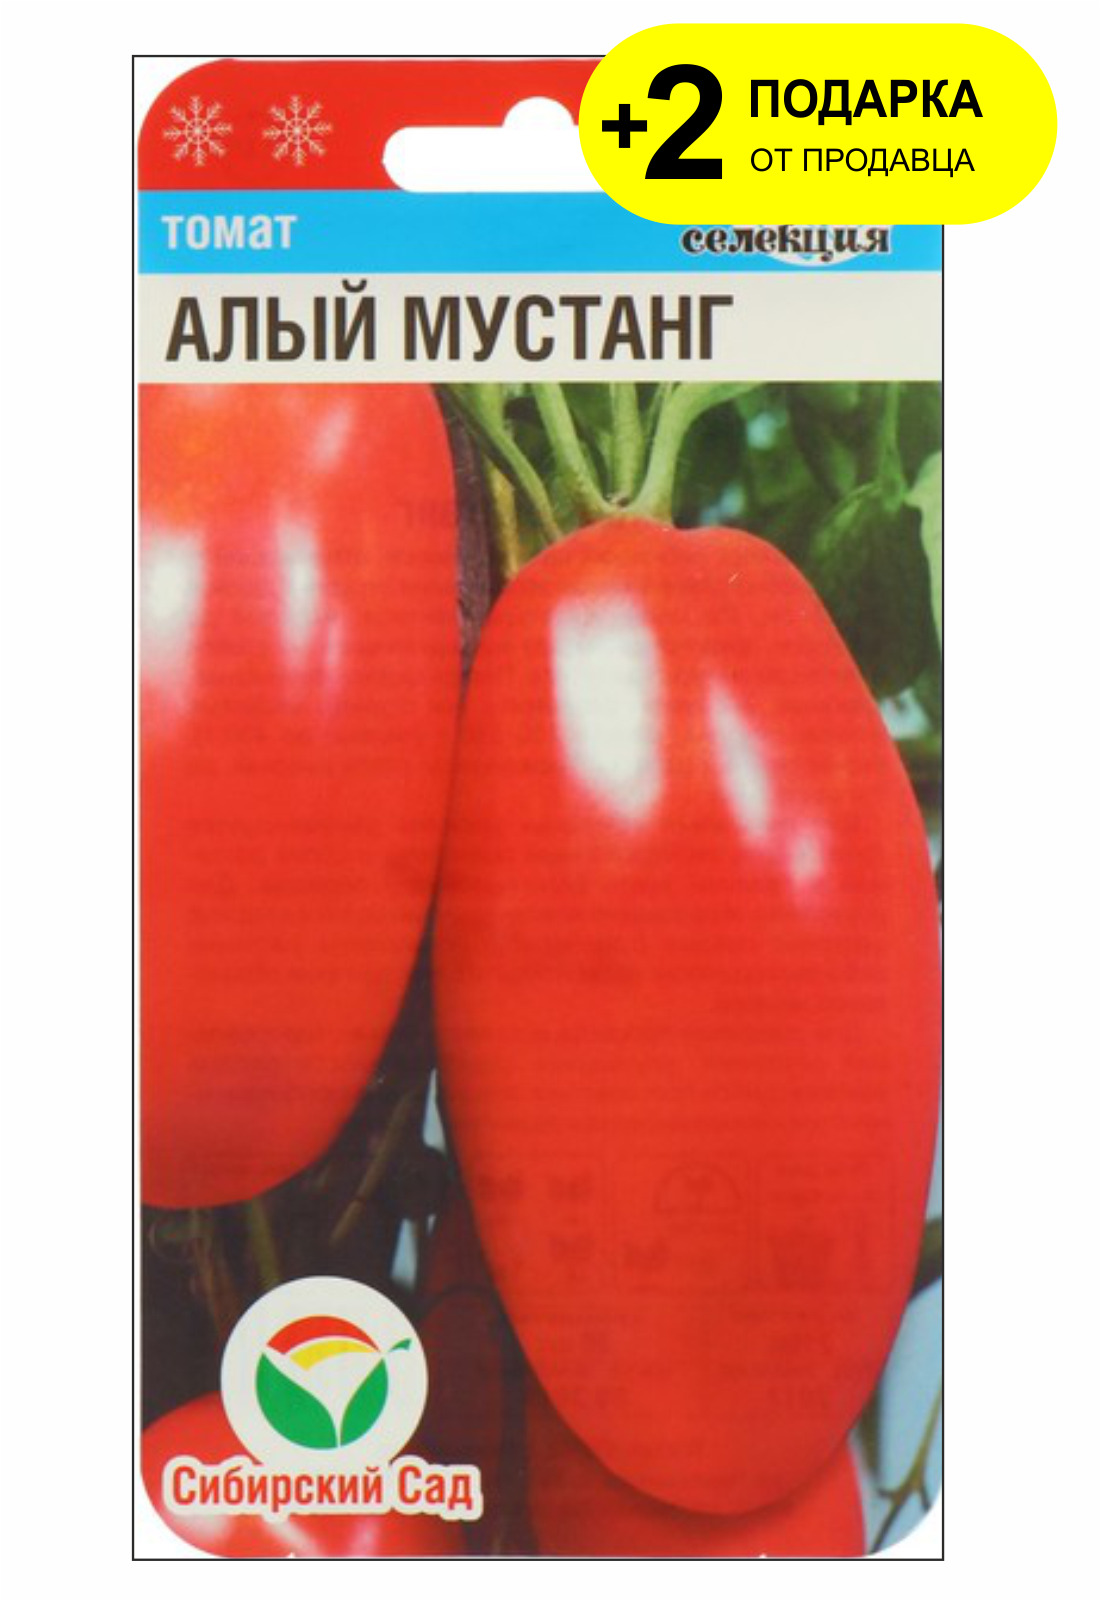 сорт томата алая заря отзывы фото